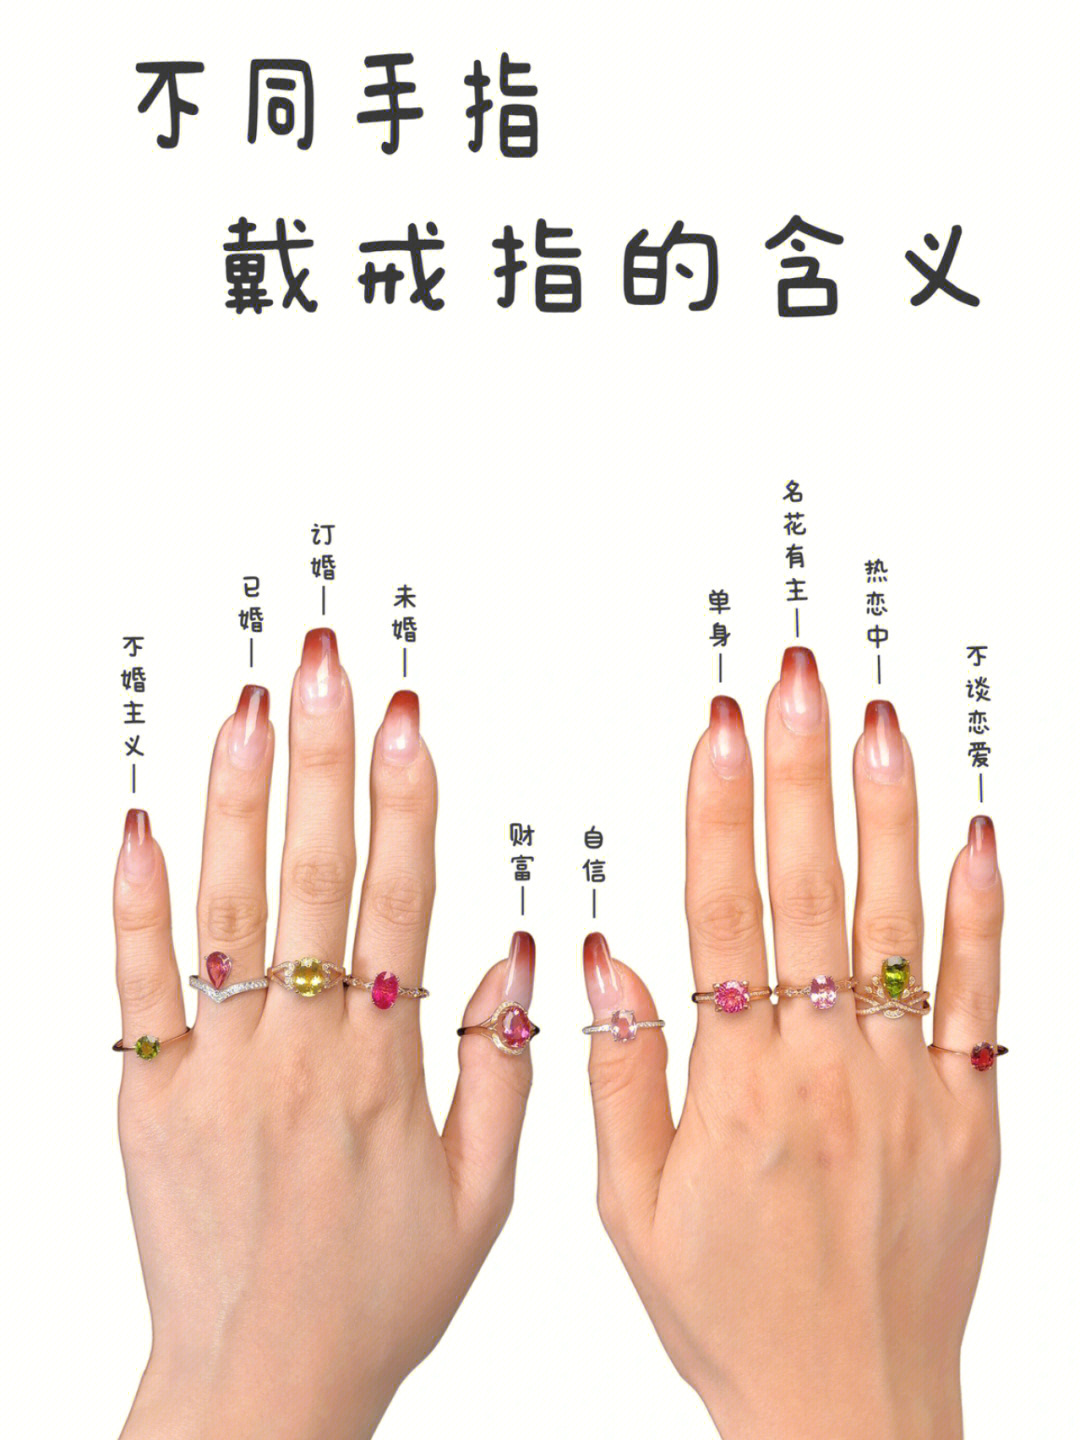 特别是对于恋爱和结婚的人来说,你手指上佩戴的戒指已经表明了自己的